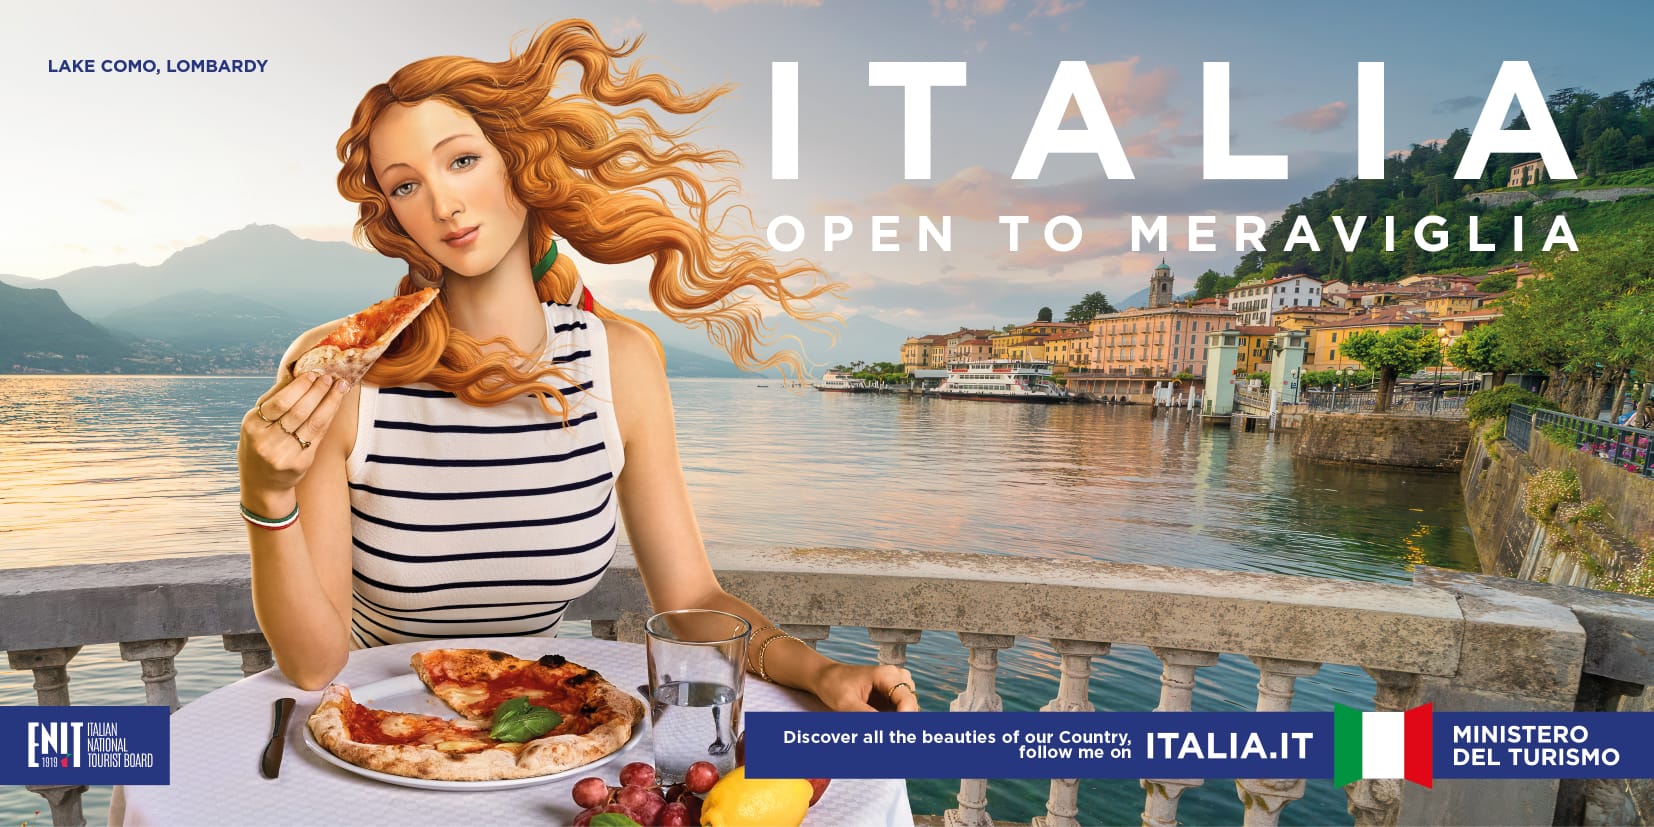 immagine ITALIA OPEN TO MERAVIGLIA con influencer virtuale che mangia la pizza al Lago di Como. Manca però il mandolino